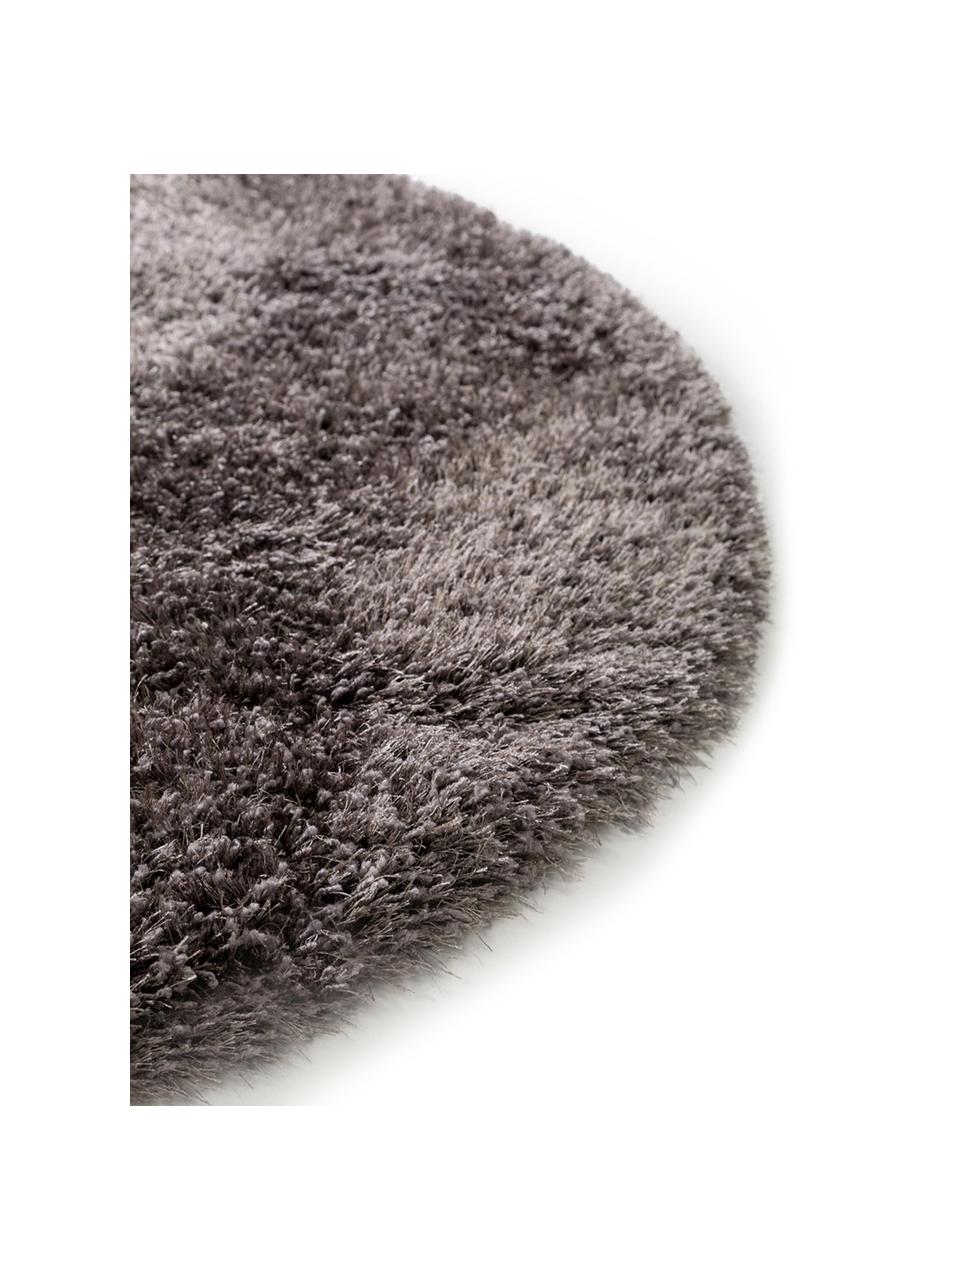 Okrągły dywan z wysokim stosem Lea, 50% poliester, 50% polipropylen, Antracytowy, Ø 160 cm (Rozmiar M)